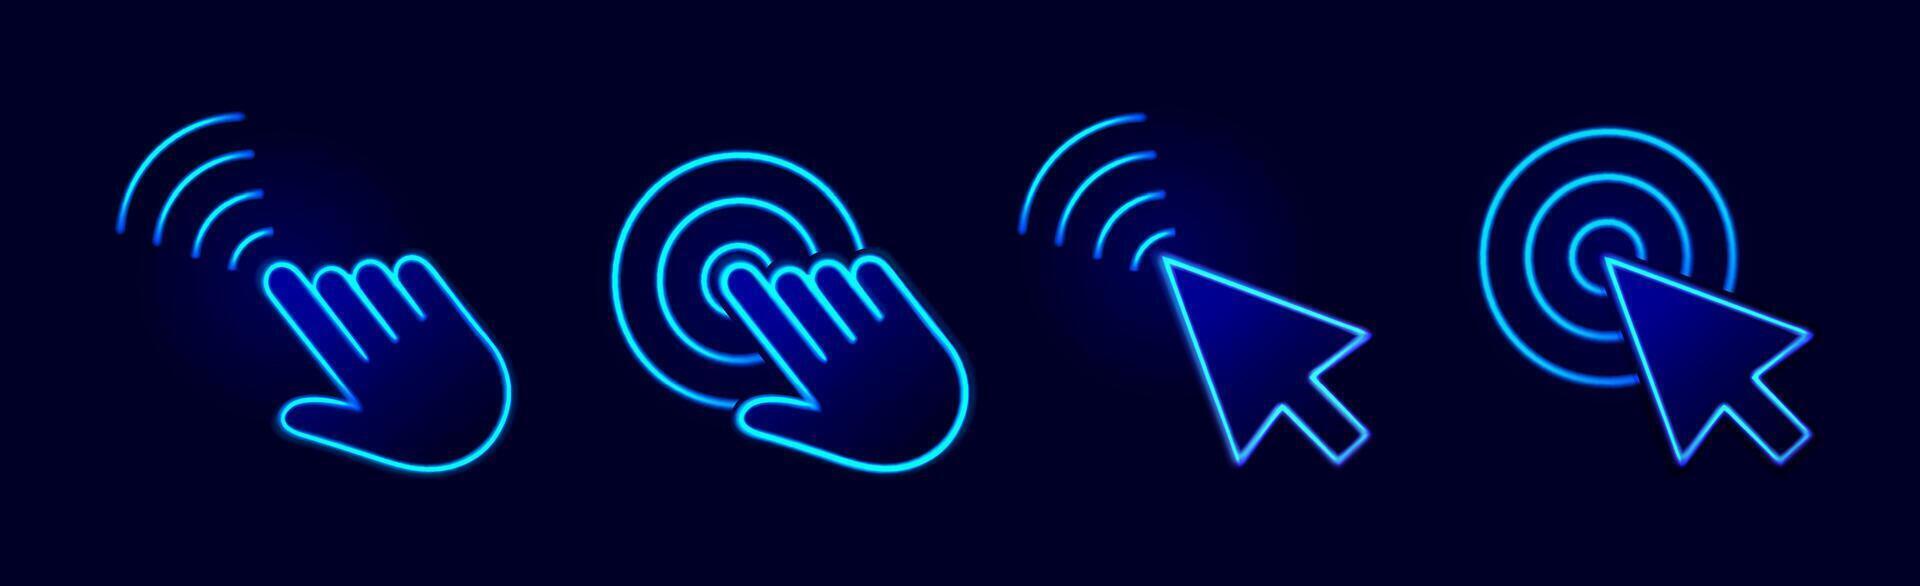 berühren Welle. Hand und Pfeil Zeiger Mauszeiger Symbole mit Neon- Licht, Bewegung und Anzeige klicken Wirkung, Kreis Wellen. einstellen vektor